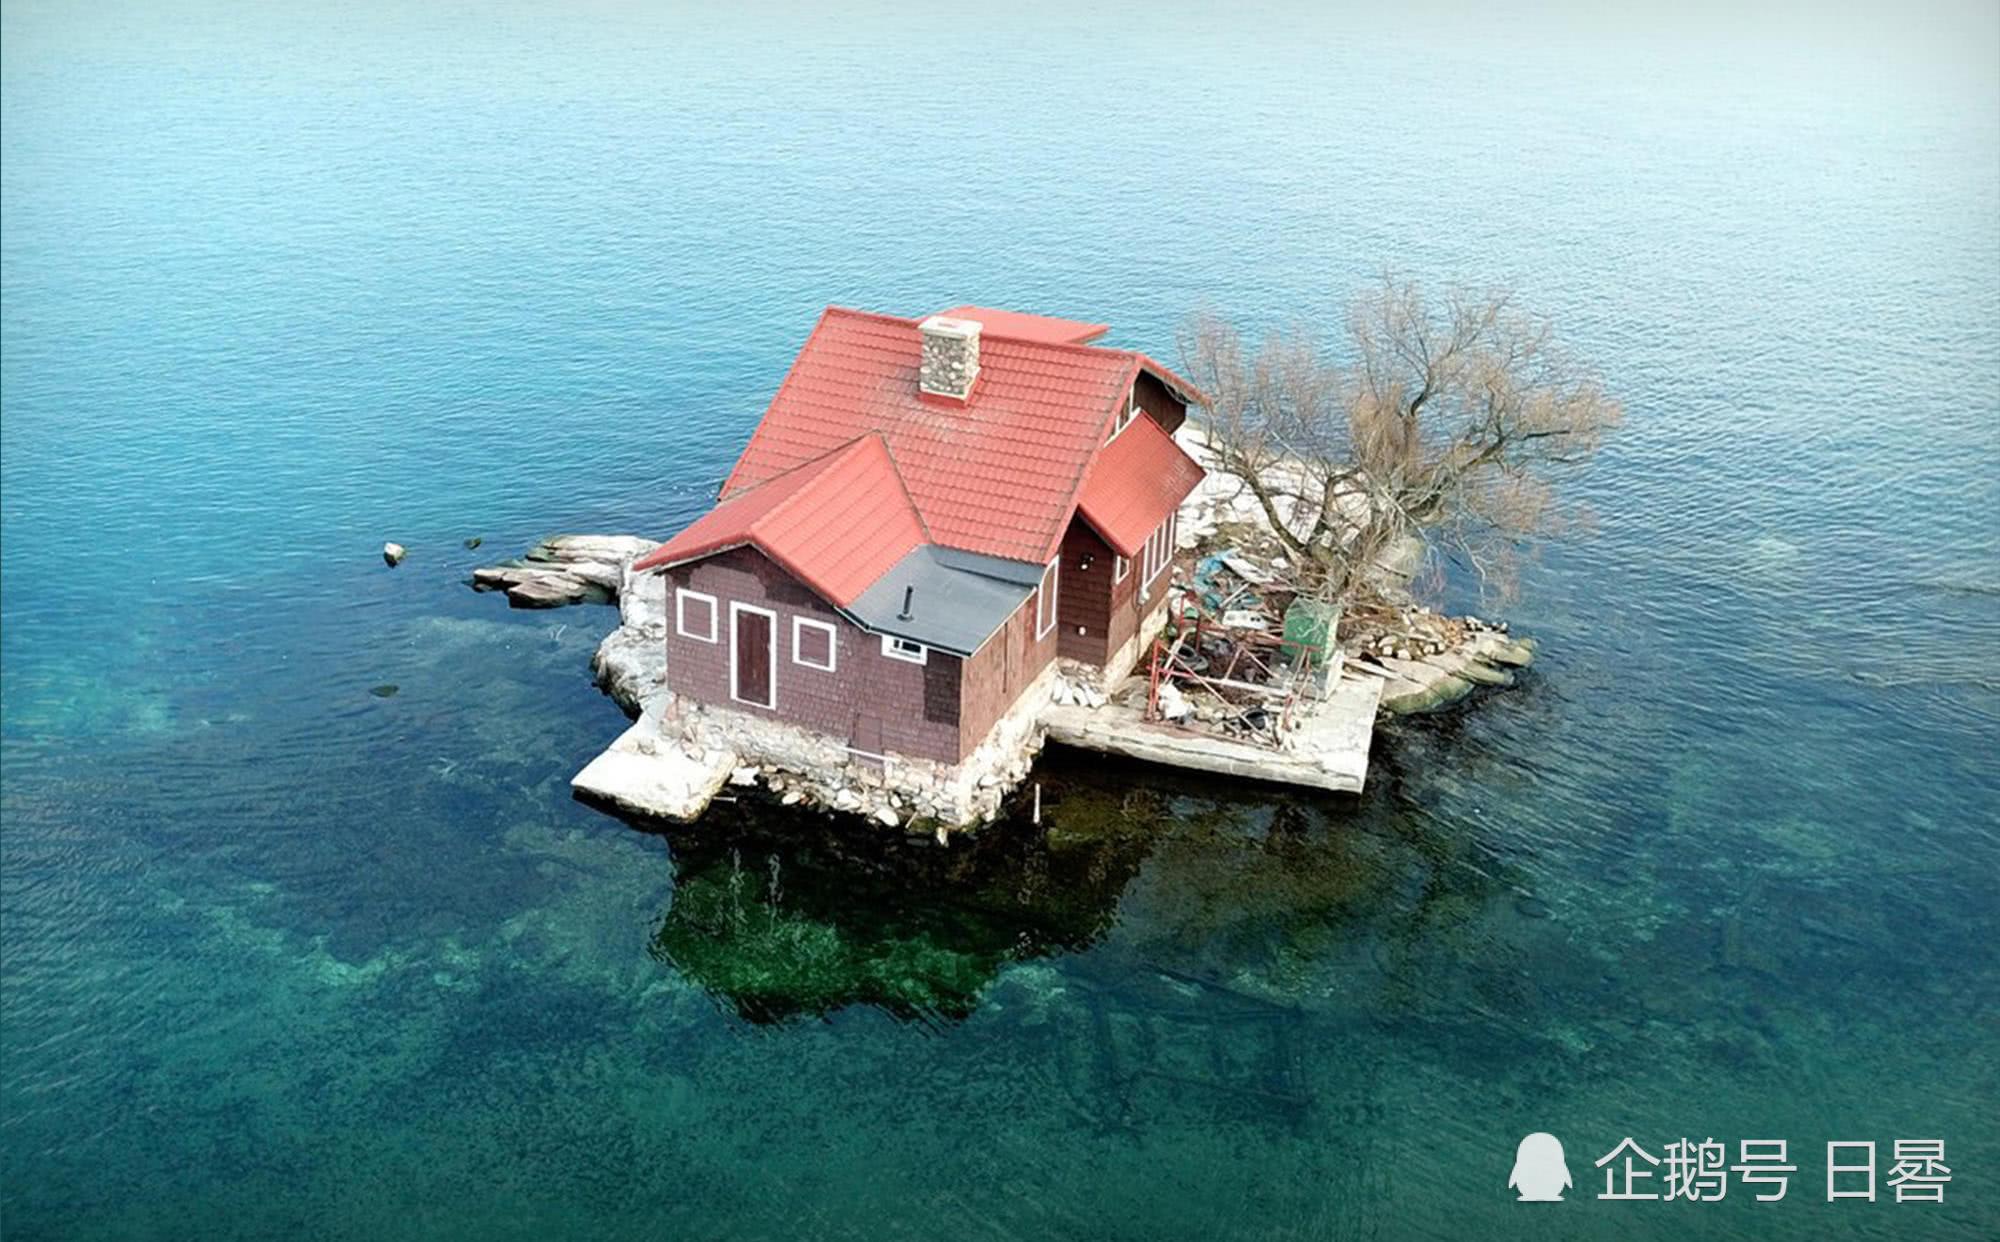 บ้านน้อยบนเกาะ